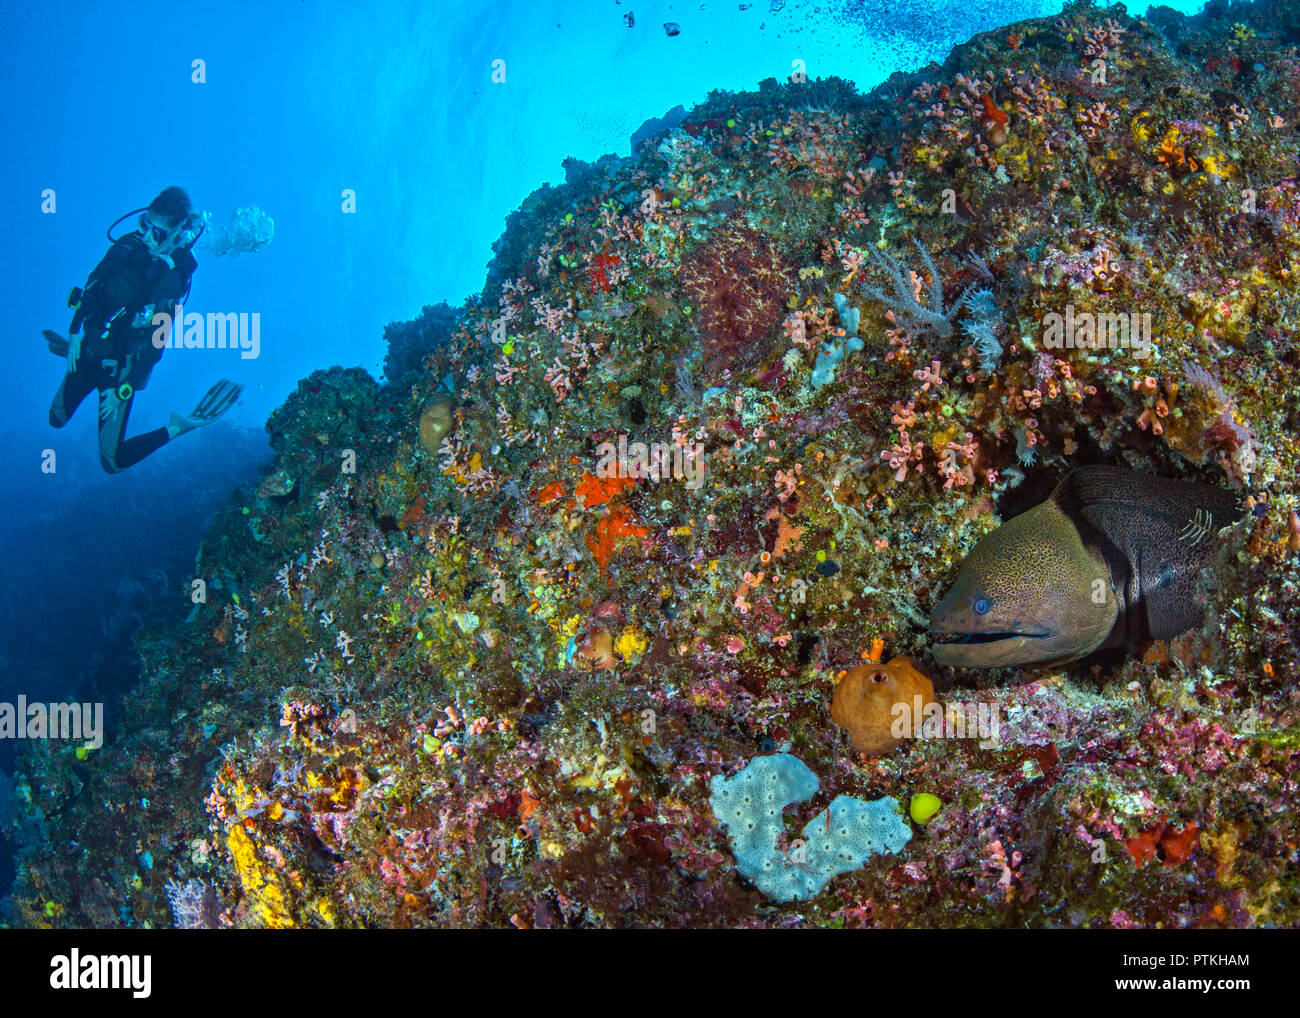 Murène verte (Gymnothorax funebris) dans les récifs de corail avec scuba diver en fond de l'eau bleu. Spratley, Mer de Chine du Sud. Banque D'Images